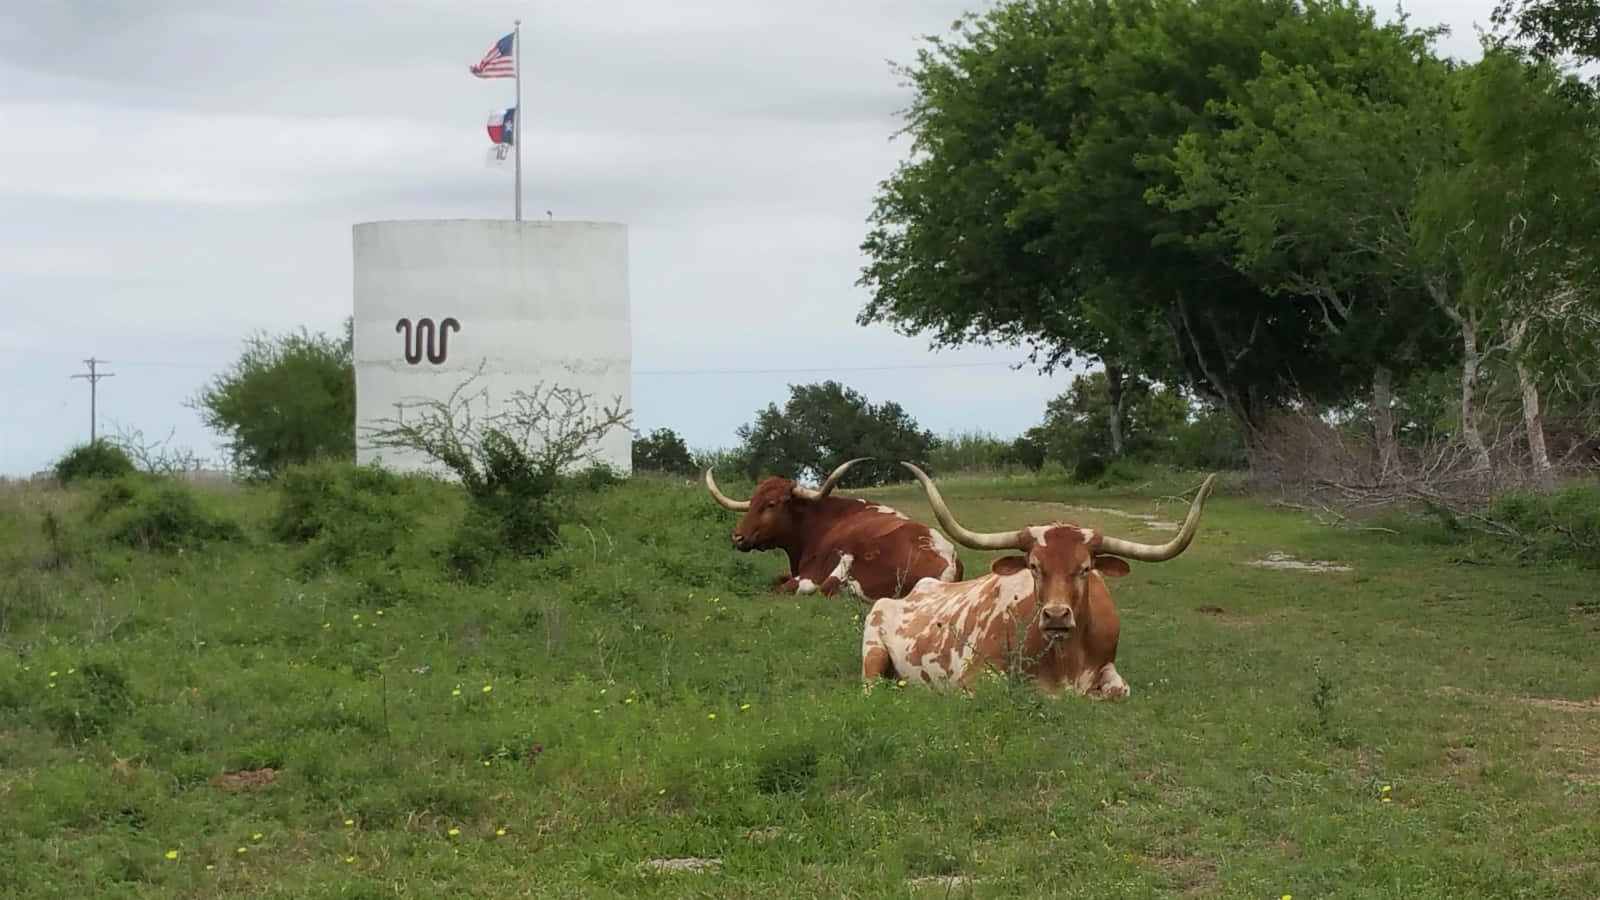 Kingranch - En Ikonisk Landskap I Södra Texas.